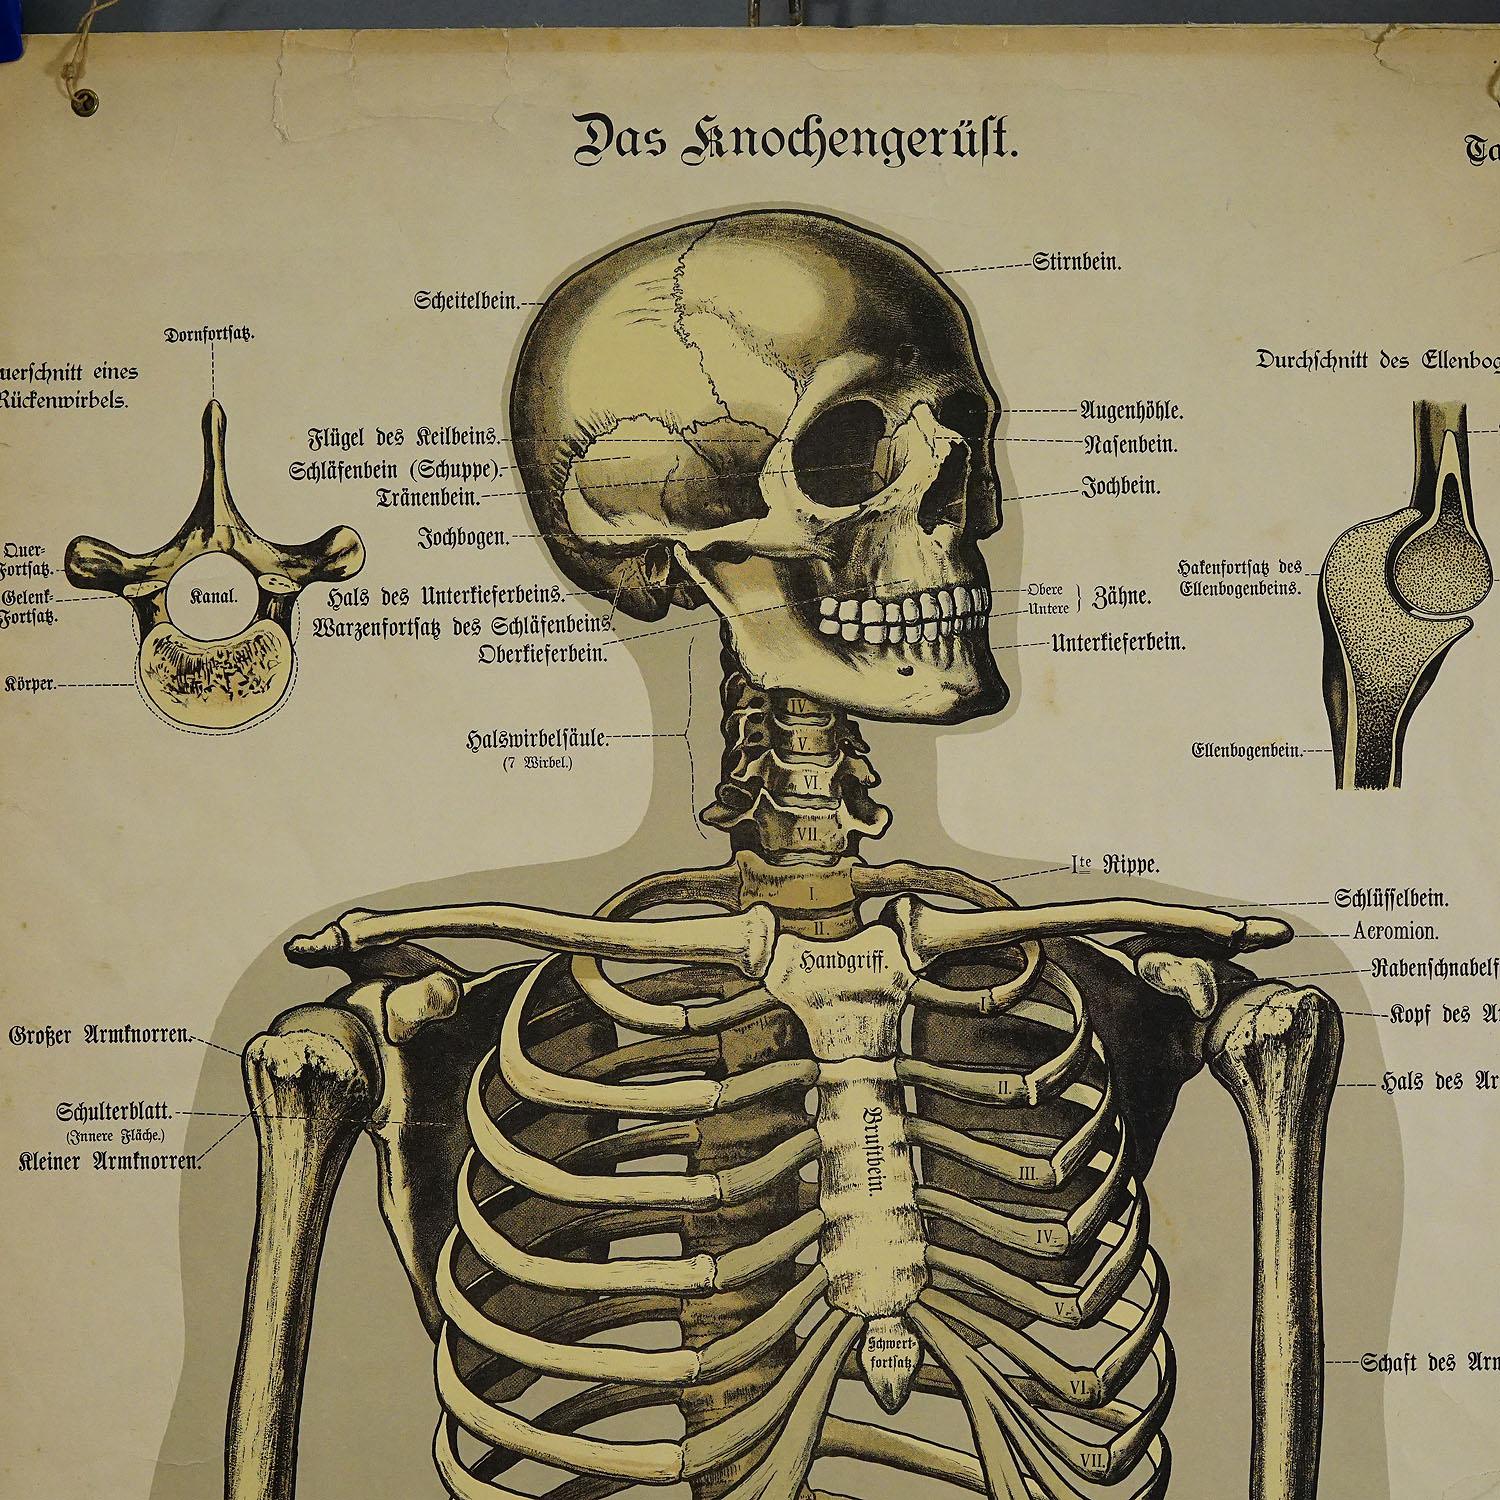 Rare planche murale anatomique du 19e siècle représentant le squelette humain. Sur les côtés Sur les côtés se trouve une description détaillée en langue allemande. La carte murale est imprimée sur carton, publiée par J. F. Schreiber, Allemagne vers